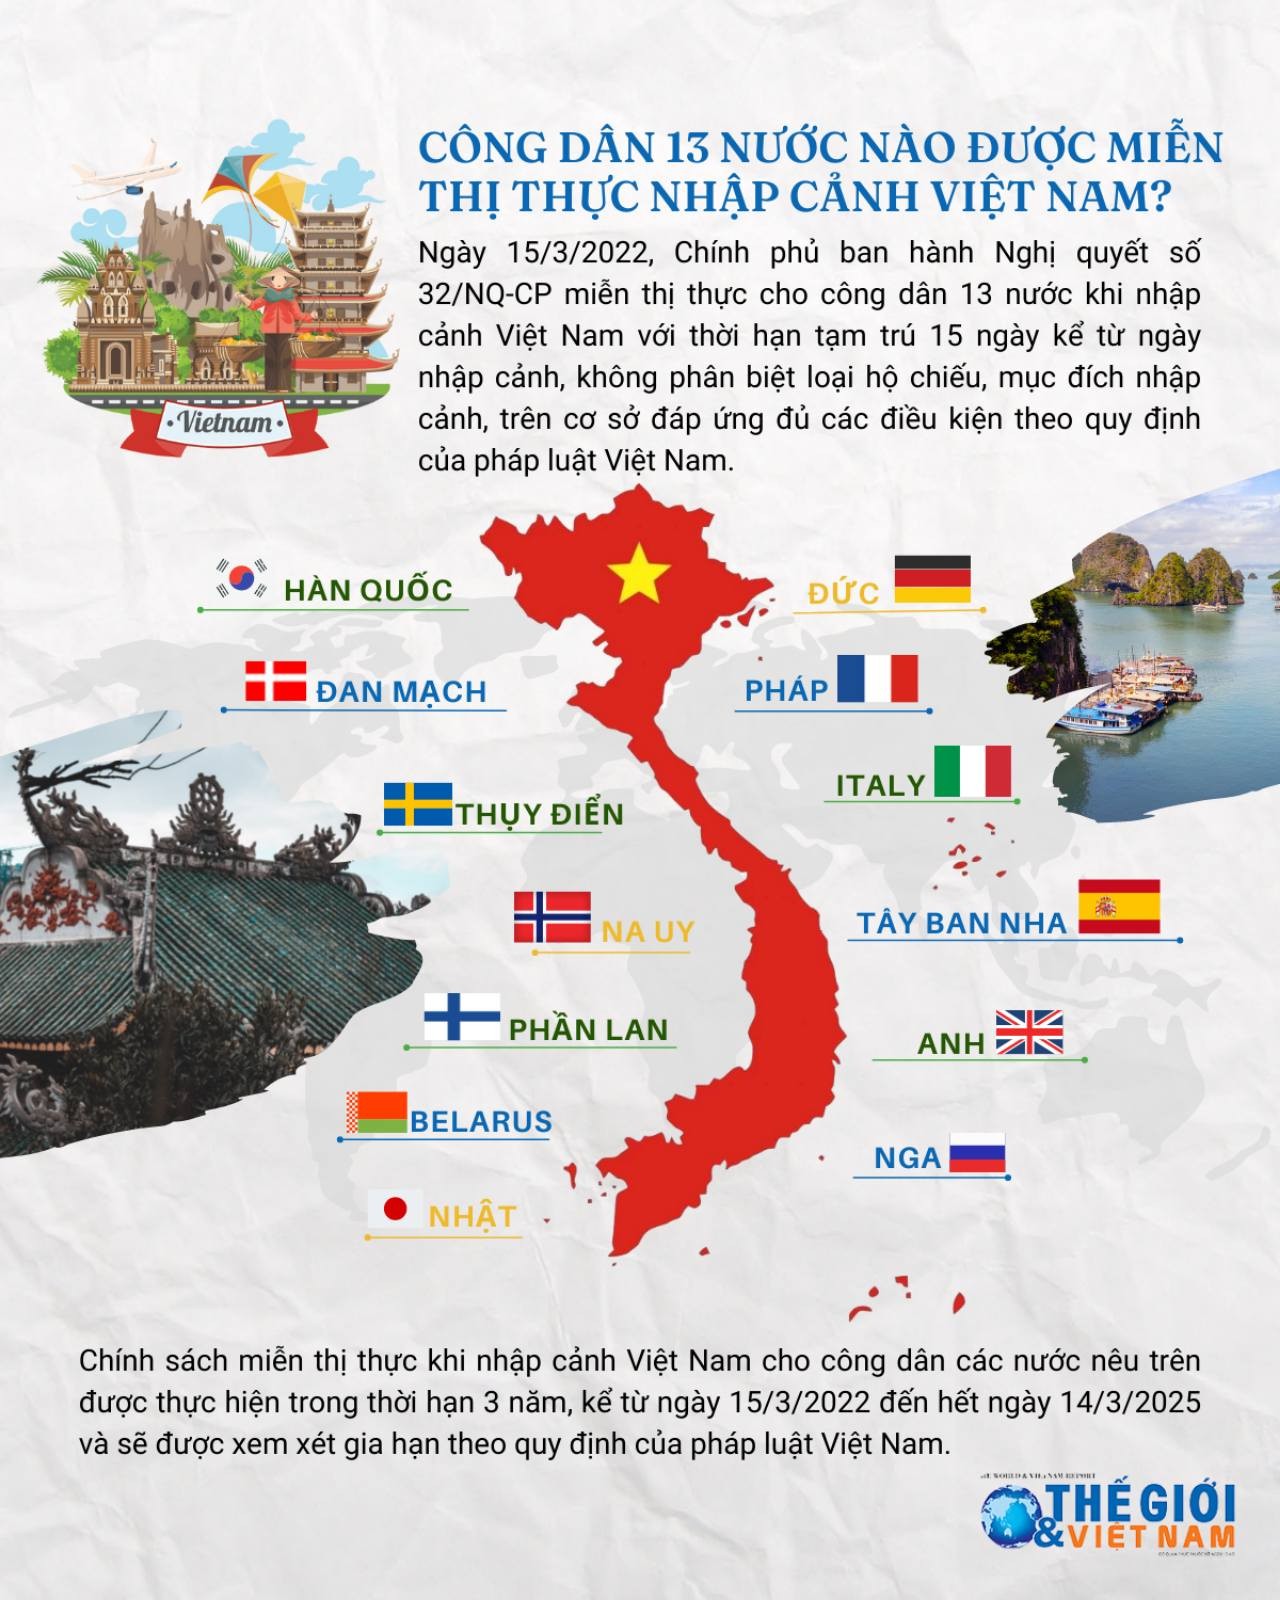 Chính phủ ban hành Nghị quyết miễn thị thực nhập cảnh Việt Nam cho công dân 13 nước